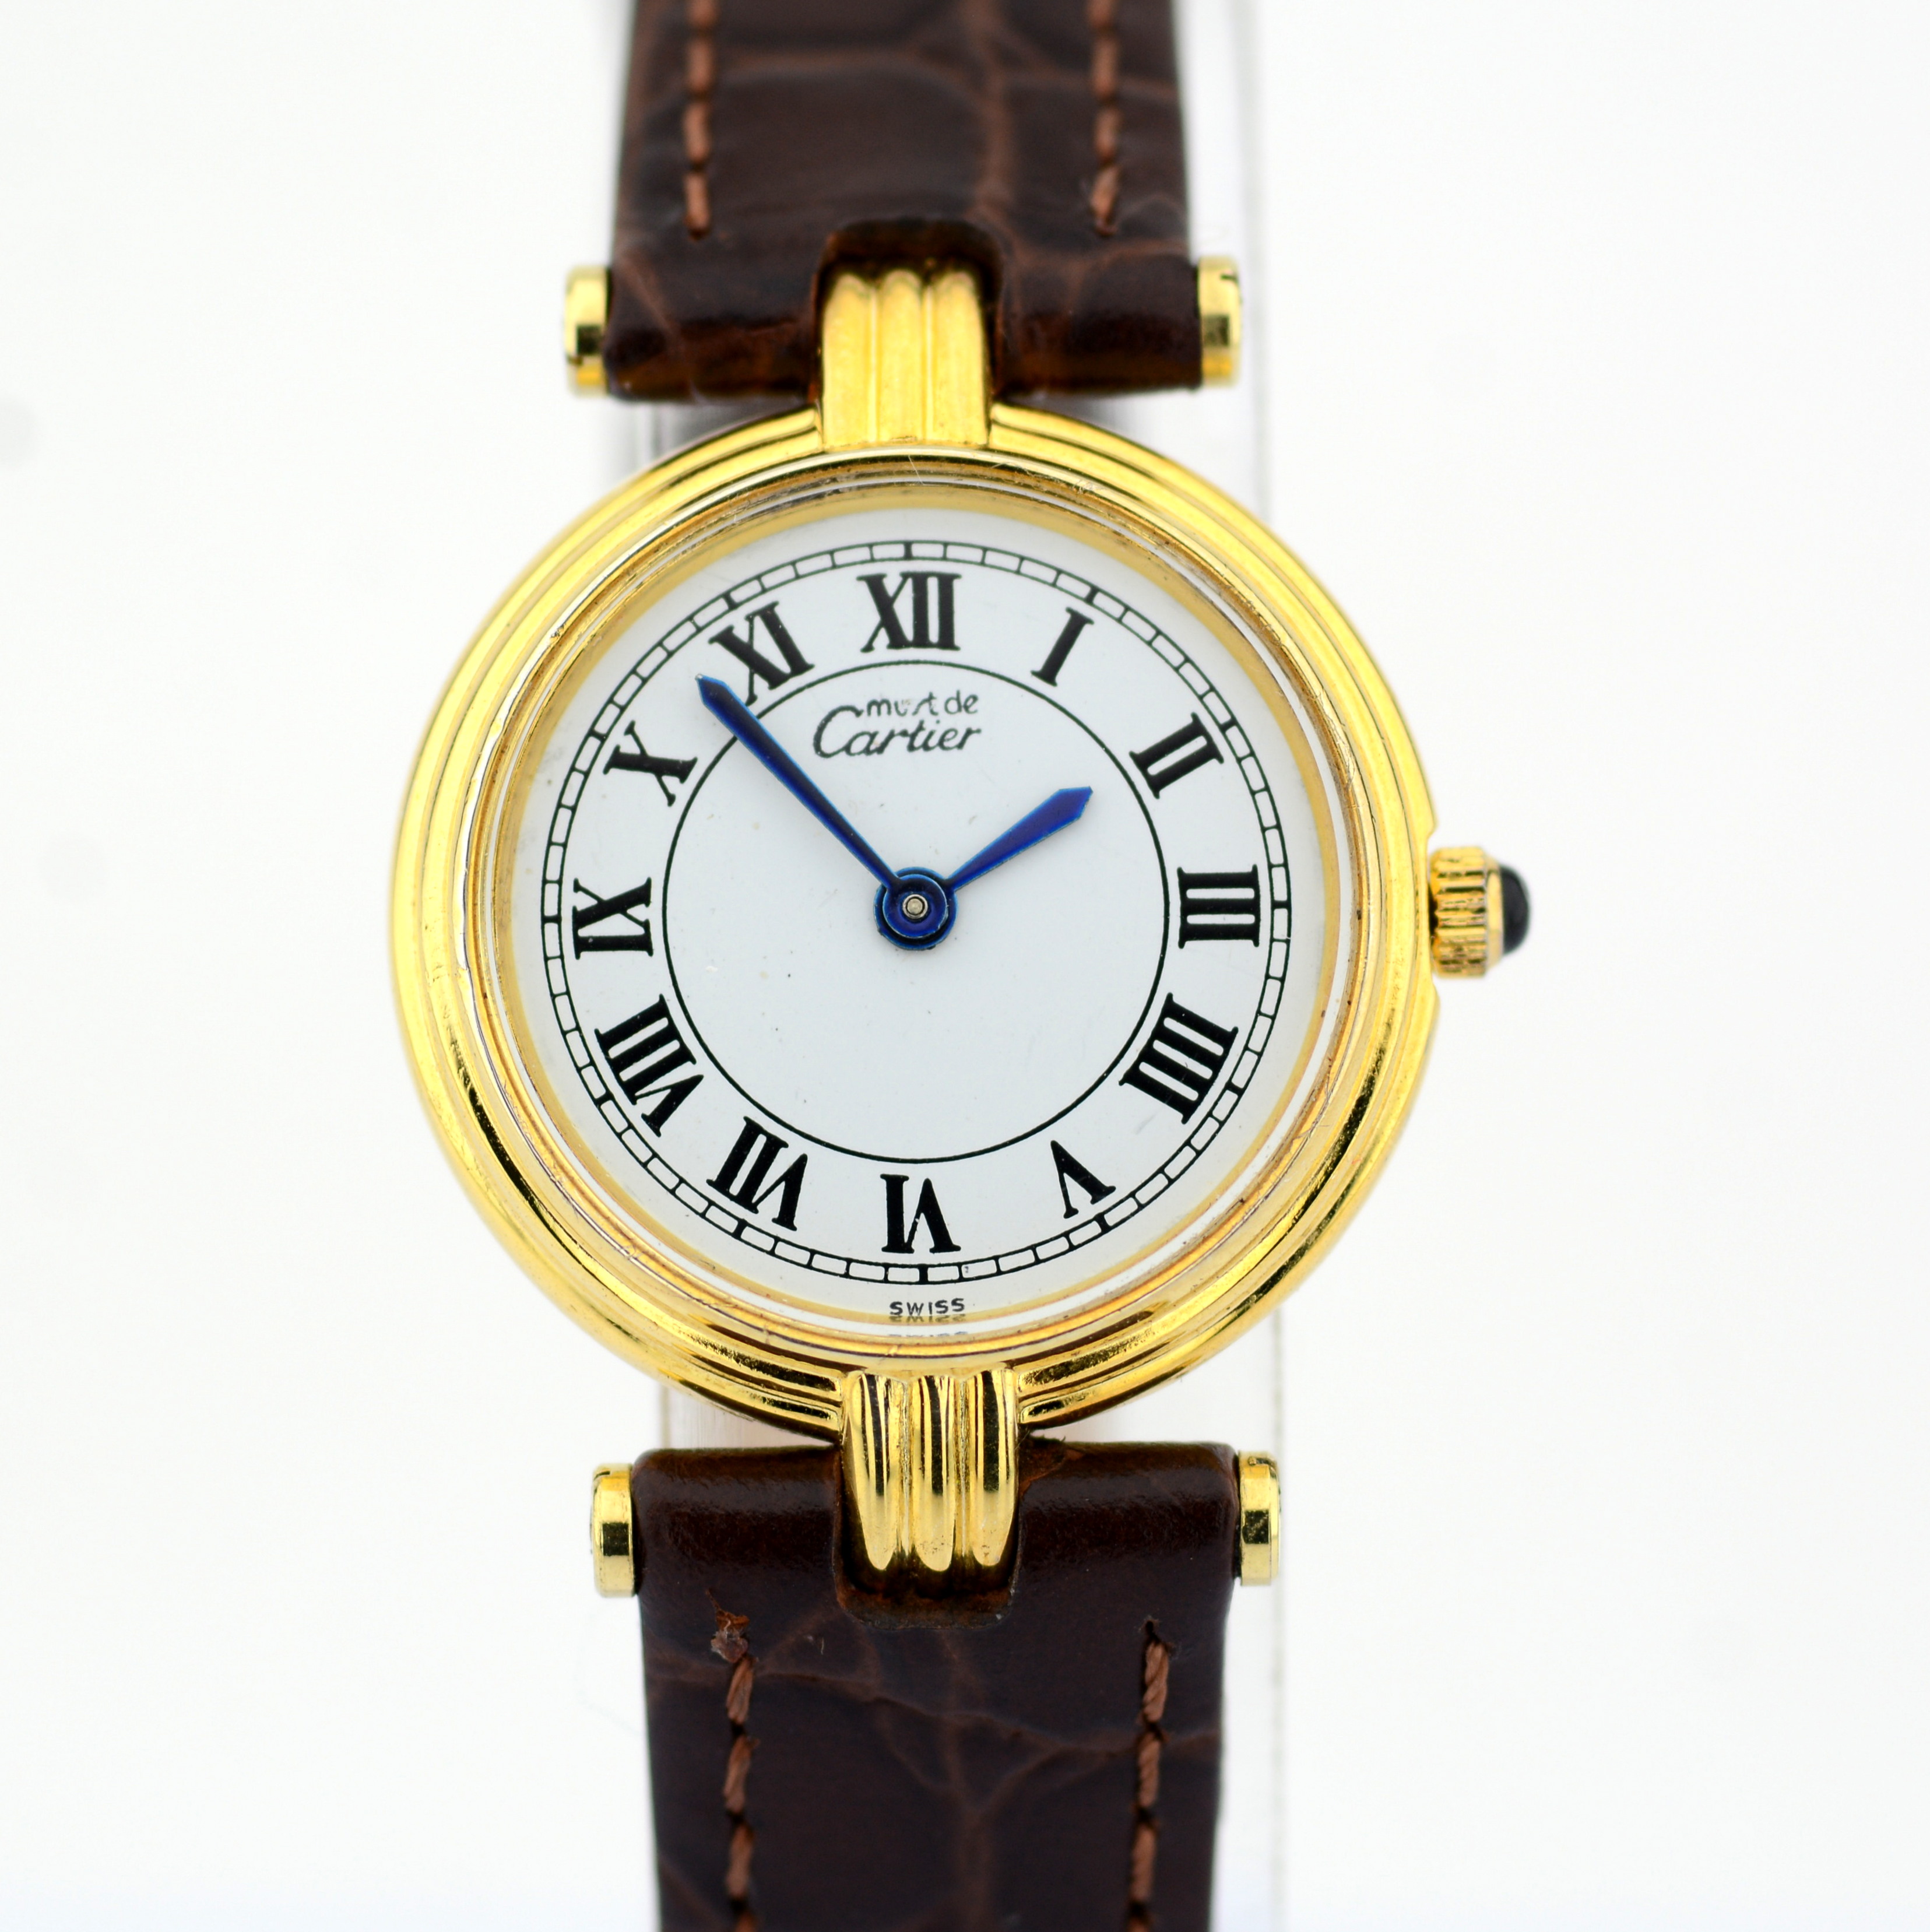 Cartier / Must de - Lady's Steel Wrist Watch - Image 8 of 8